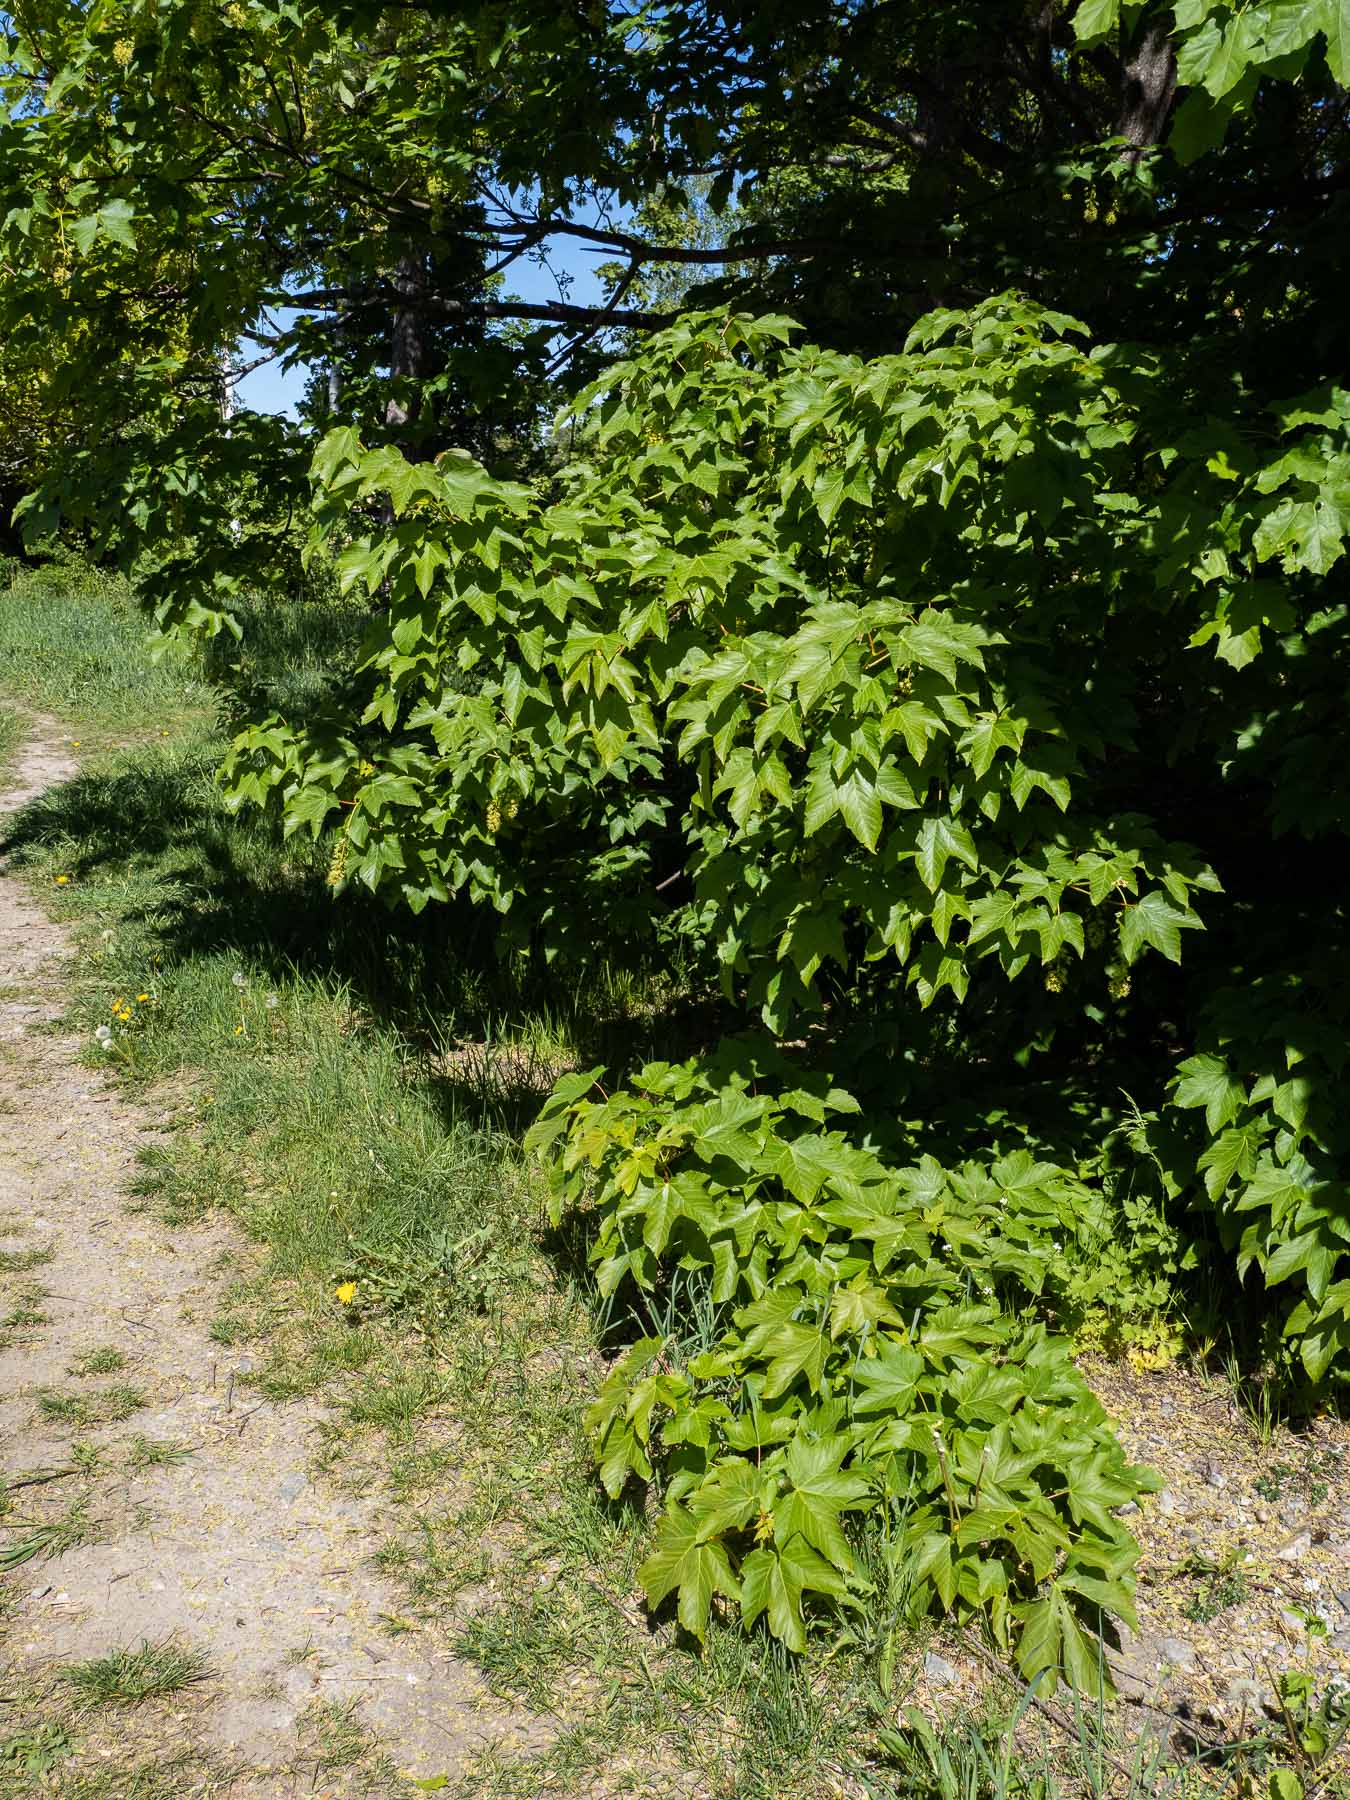 Клён ложноплатановый (Acer pseudoplatanus), также известный как клён белый, в Швеции - интродуцированный вид, завезённый в страну в XVIII веке и успешно прижившийся в её южной части. Стокгольм, май 2020 года. Автор фото: Сутормина Марина